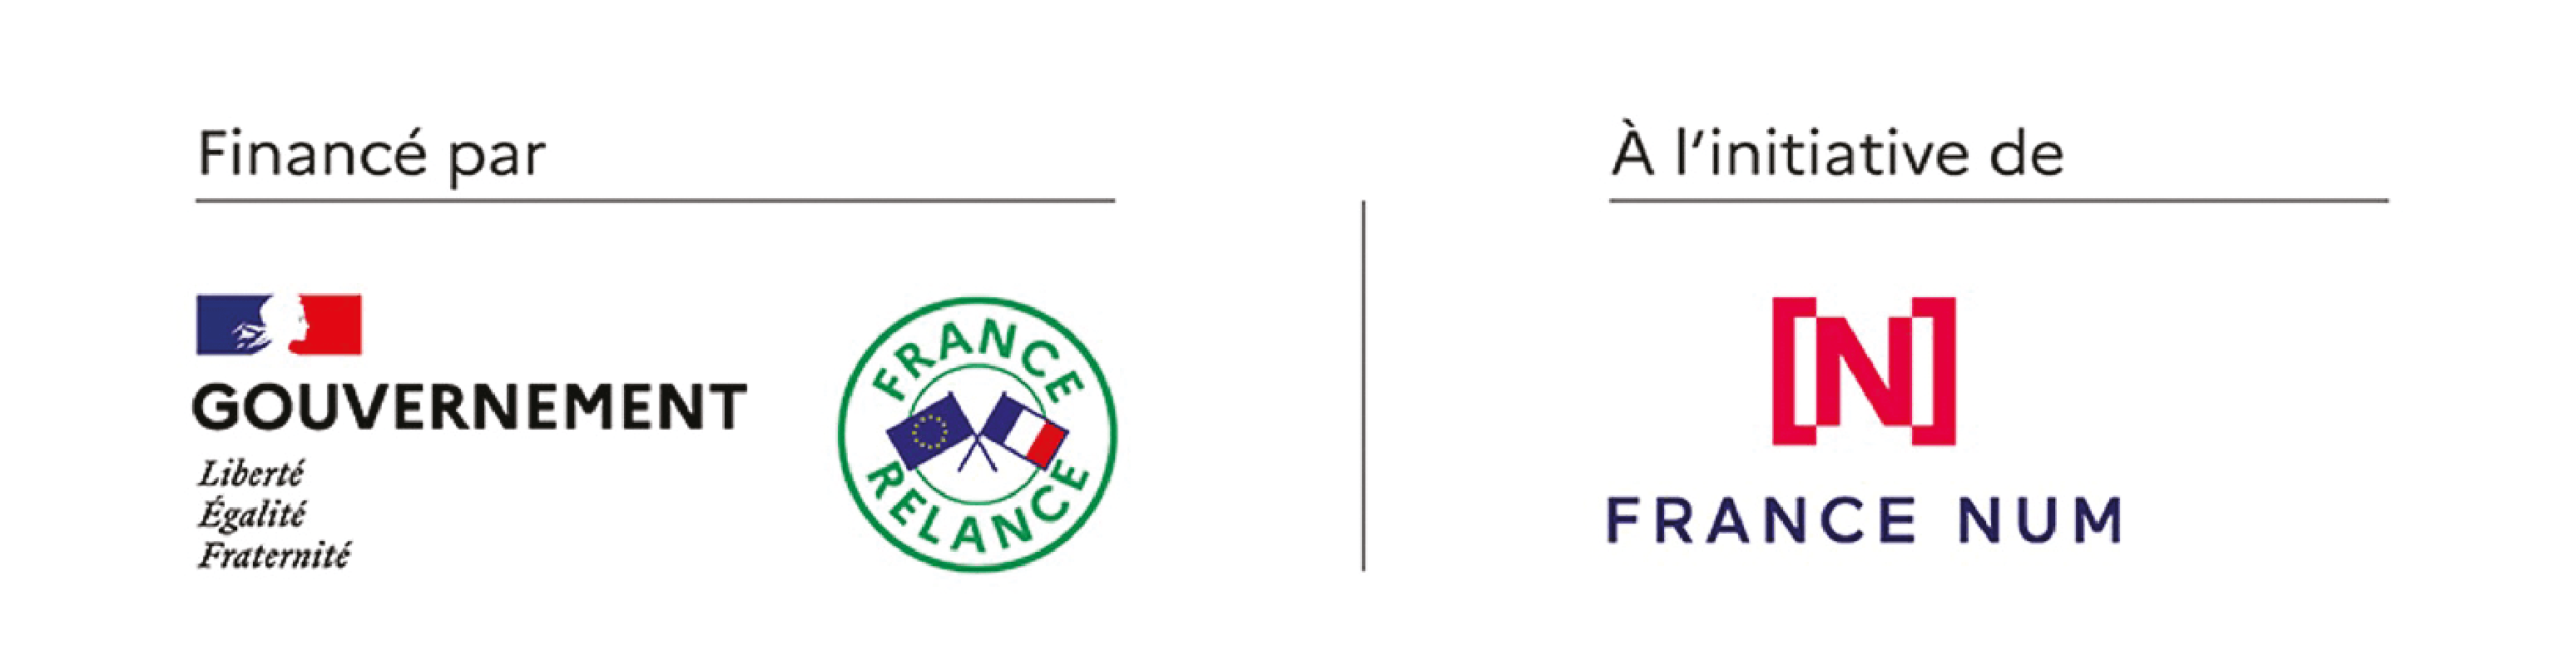 Logos Etat- France Num